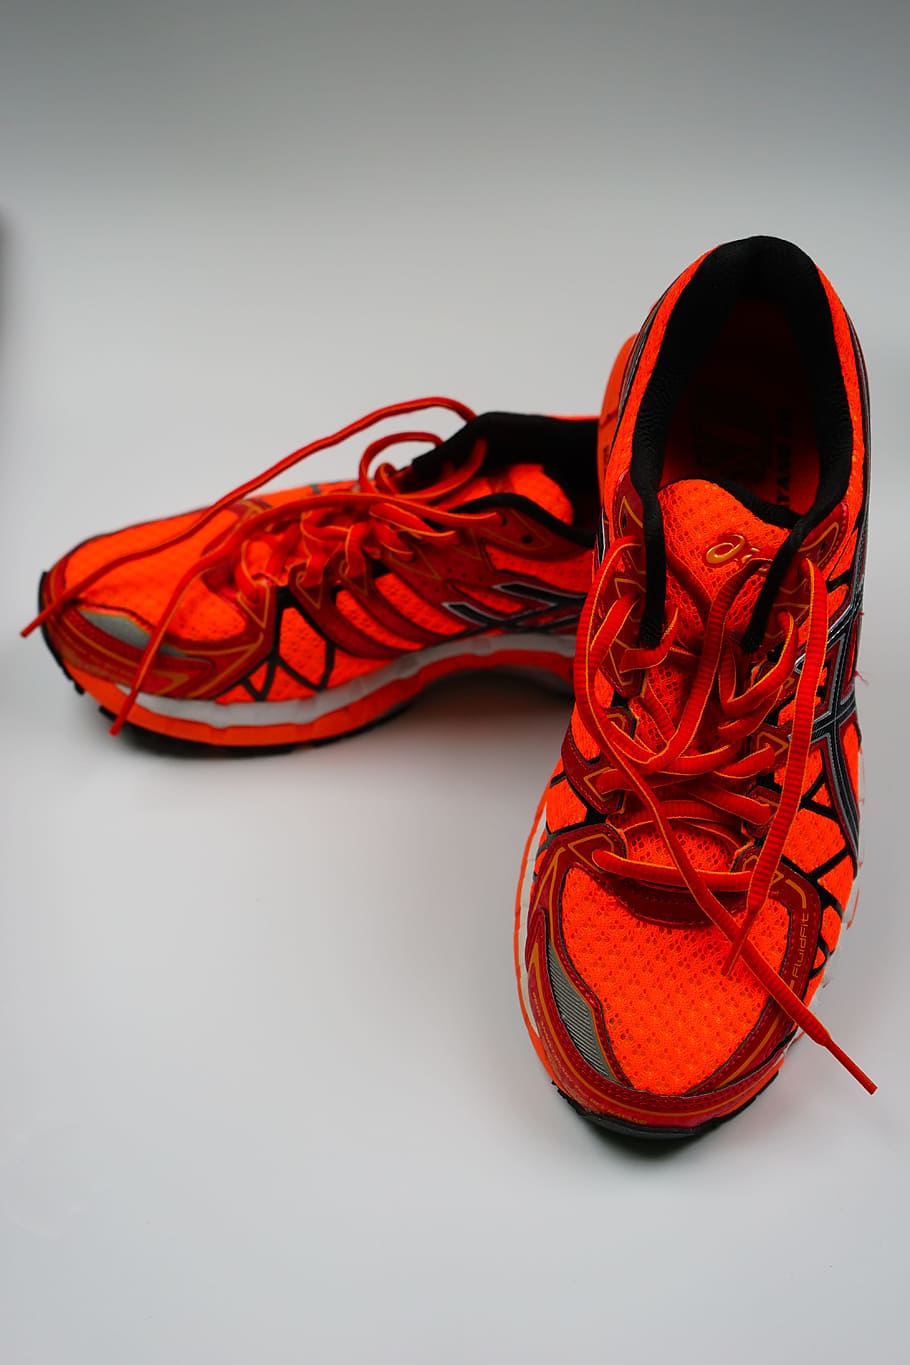 คู่ของรองเท้าวิ่งสีแดง, รองเท้าผ้าใบ, รองเท้าวิ่ง, คายาโนะ, asics, asics kayano 20, รองเท้า, รองเท้ากีฬา, วิ่ง, เขย่าเบา ๆ , กีฬา, แข่ง, เชือกผูกรองเท้า, วิ่งจ๊อกกิ้ง, รองเท้าวิ่ง, การปัก, สีส้ม, สีแดง, ฉูดฉาด, knallbunt, สดใส สีส้มโดดเด่นสีนีออนนีโอเรนจ์, วอลล์เปเปอร์ HD, วอลเปเปอร์โทรศัพท์